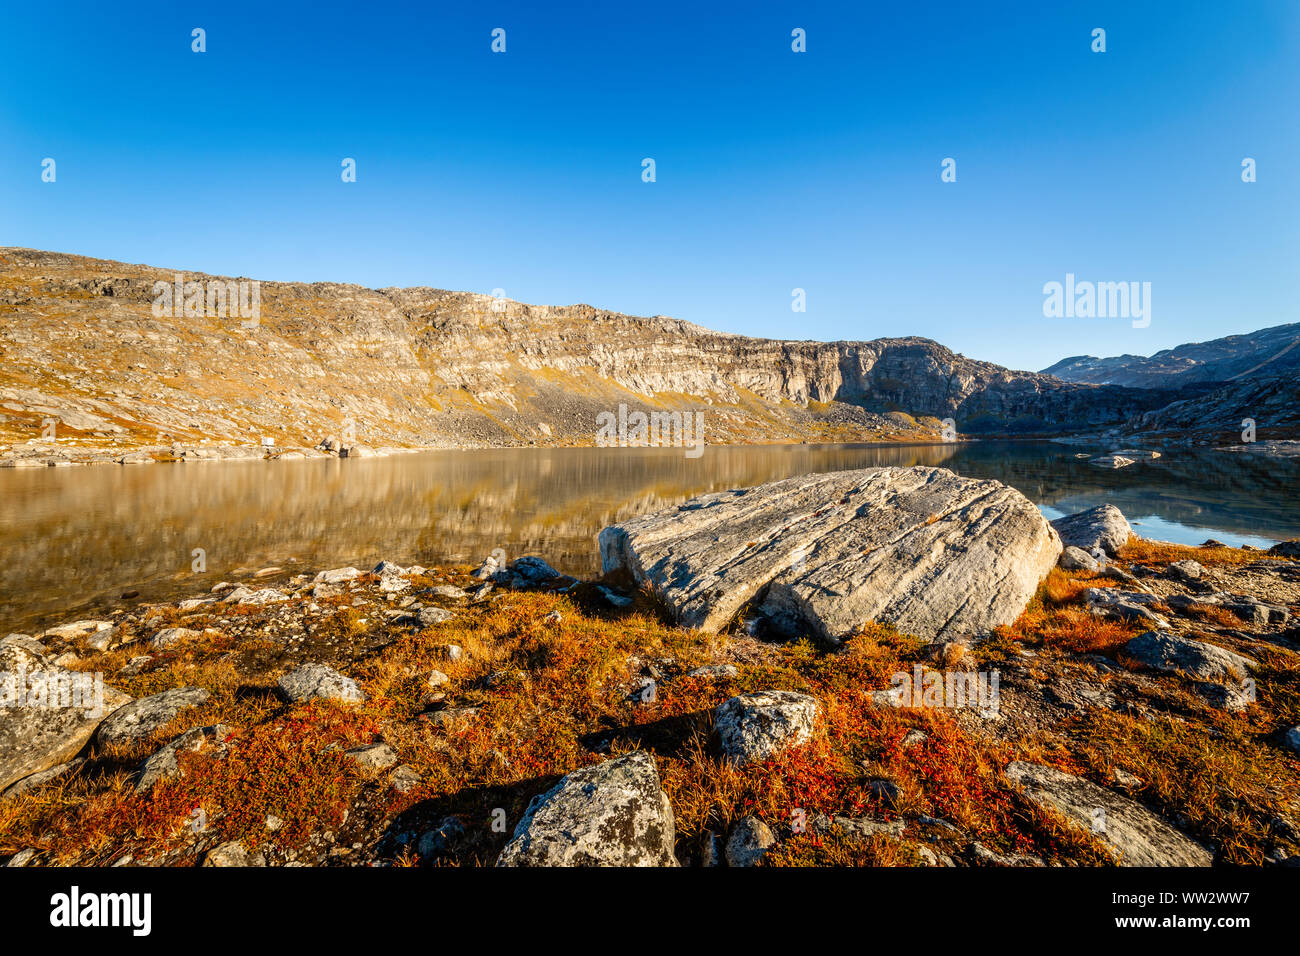 Orange autunno tundra groenlandese paesaggio con big stone e il lago in background, Nuuk, Groenlandia Foto Stock